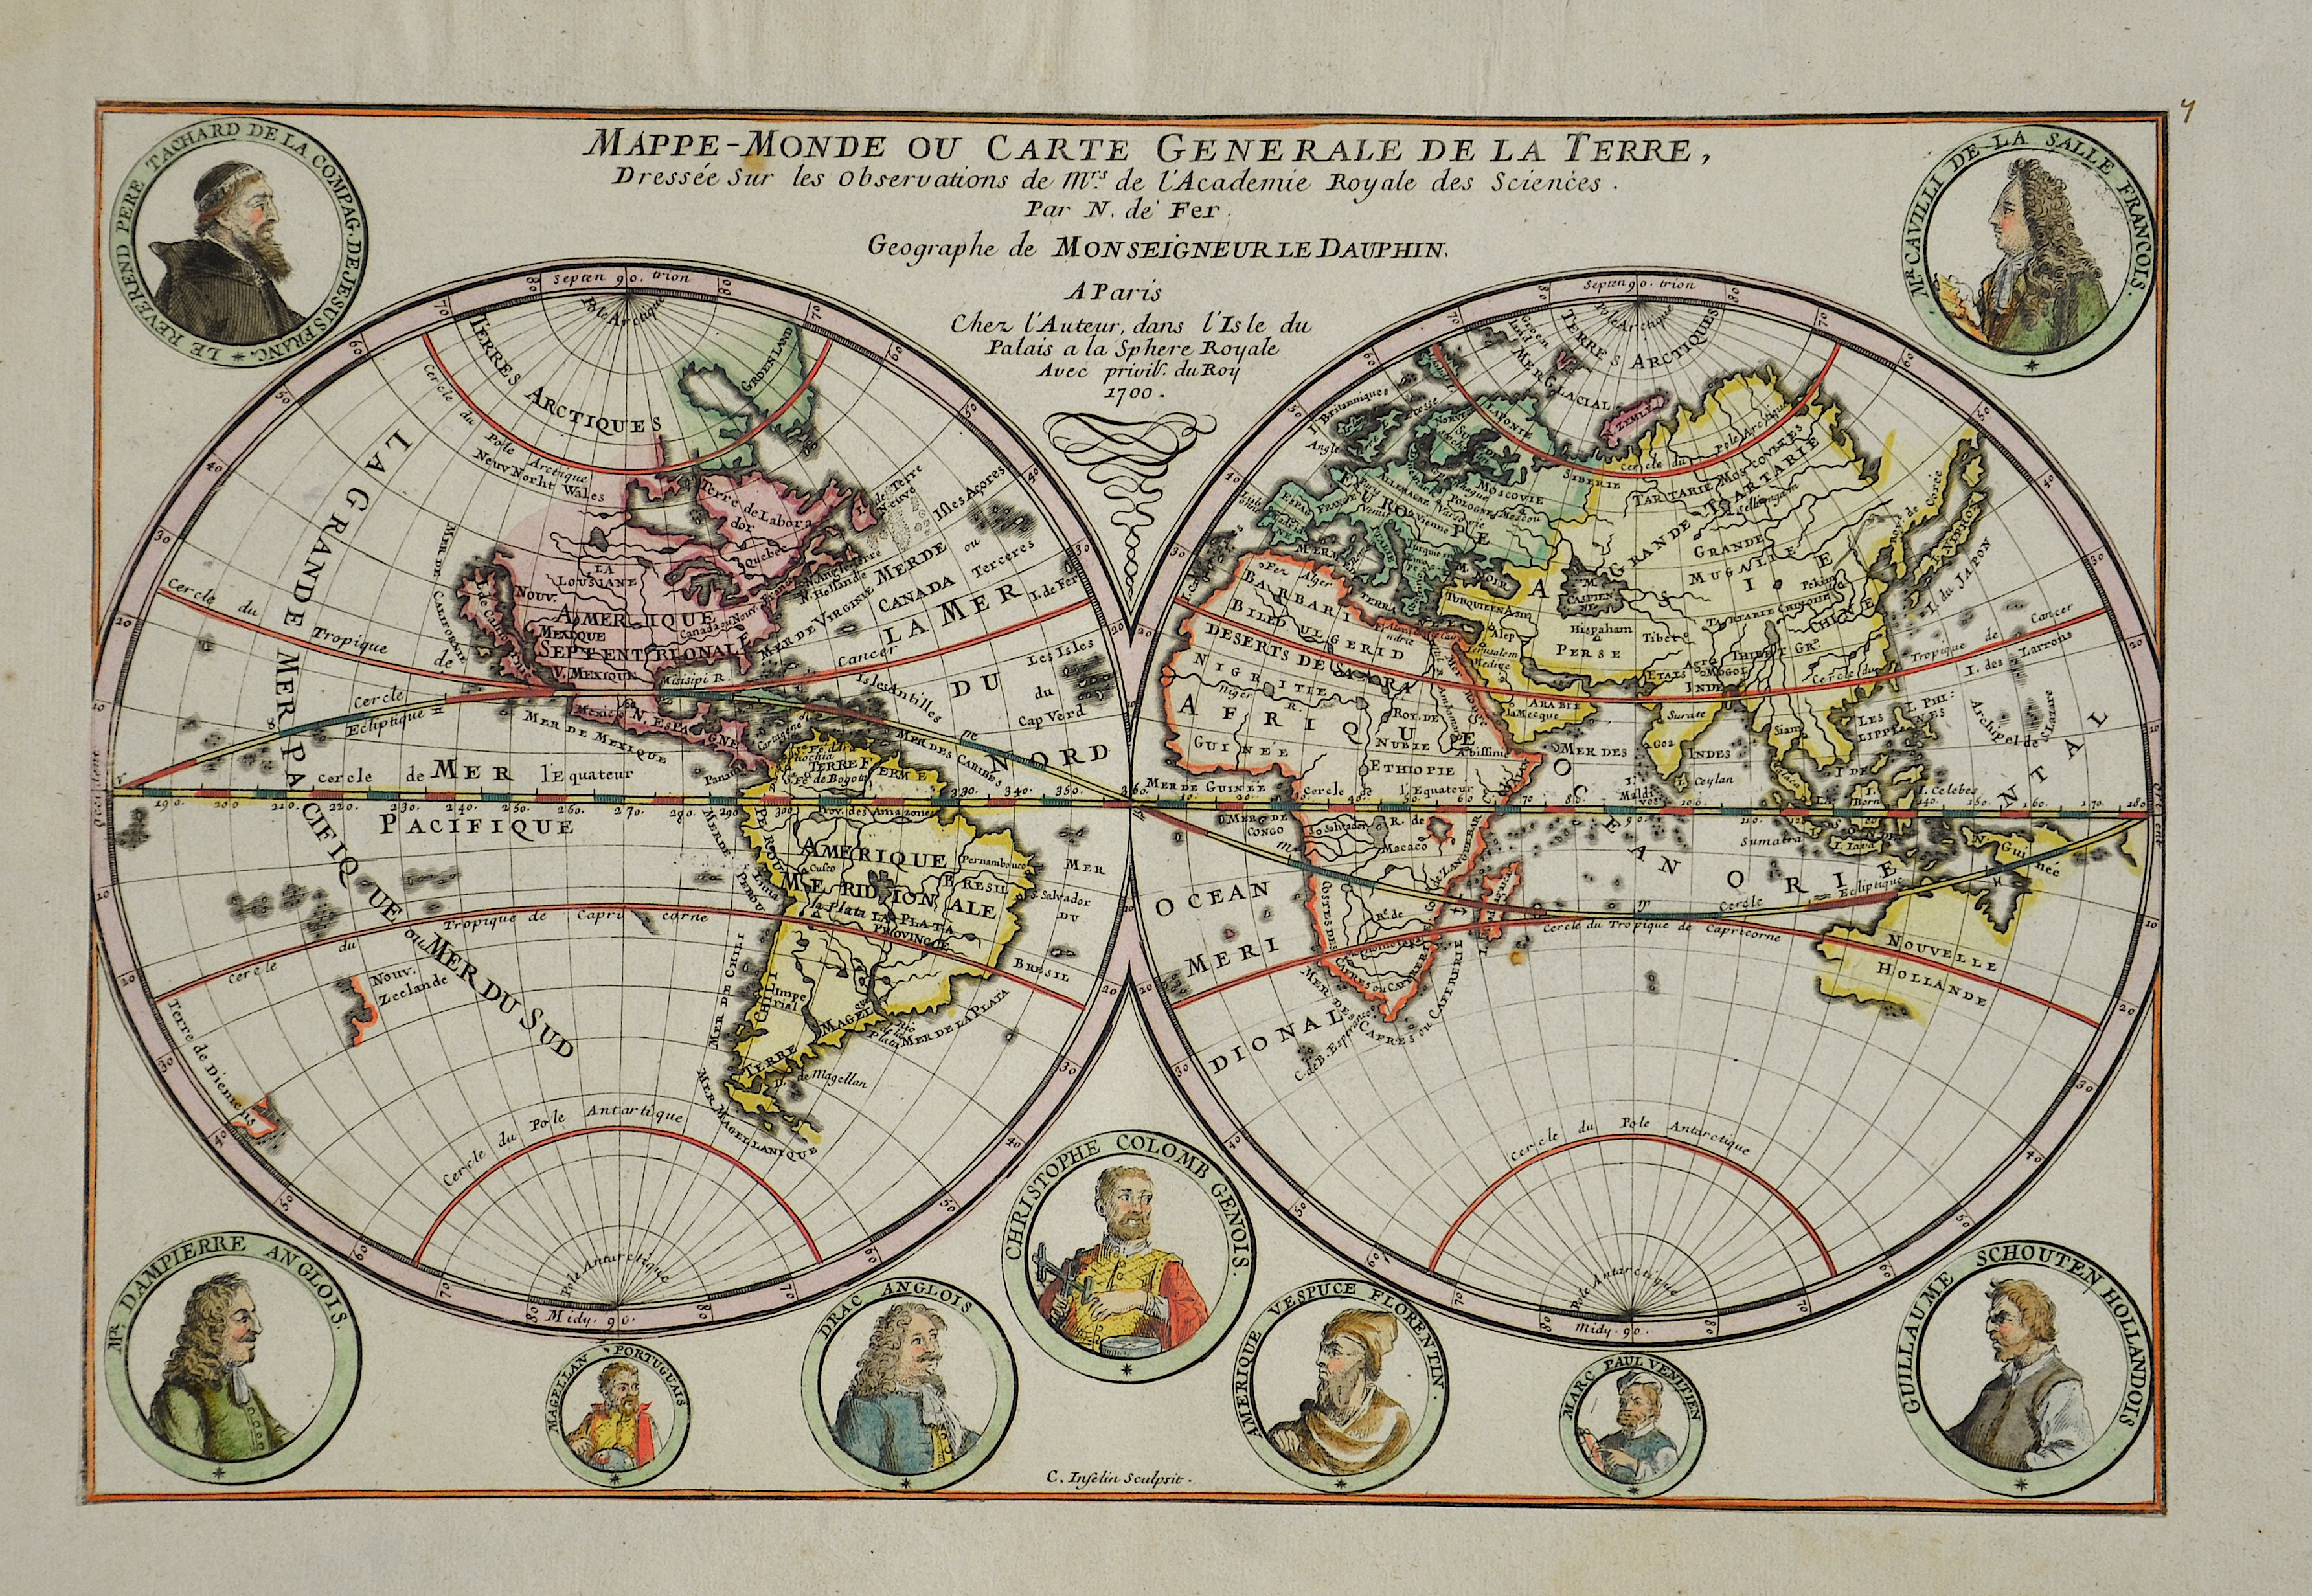 Fer, de Nicolas Mappe-Monde ou Carte Generale de la Terre, Dressée sur les observations de Mrs. De l’Academie Royale des Sciences.